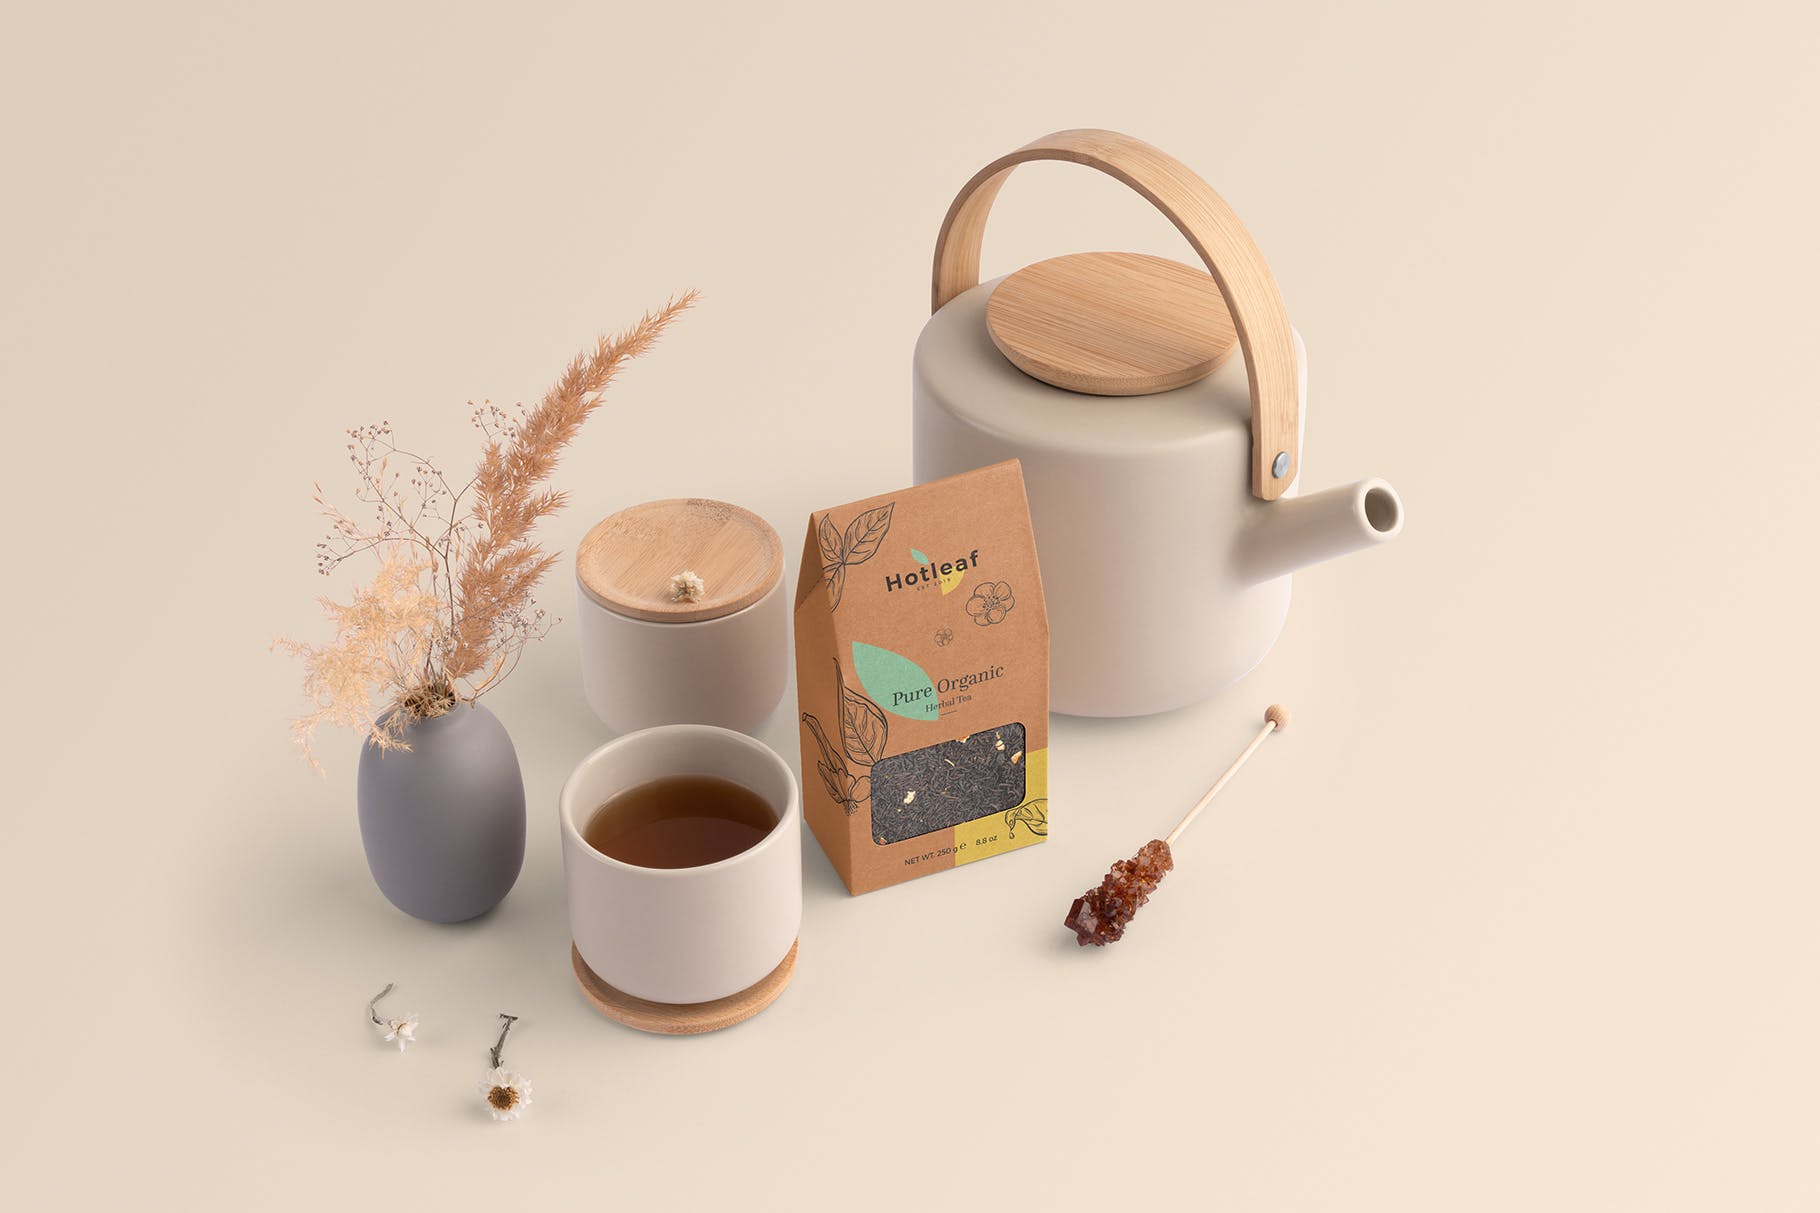 茶叶品牌VI视觉设计效果图样机模板 Hotleaf – Teahouse Branding Mockups 设计素材模板